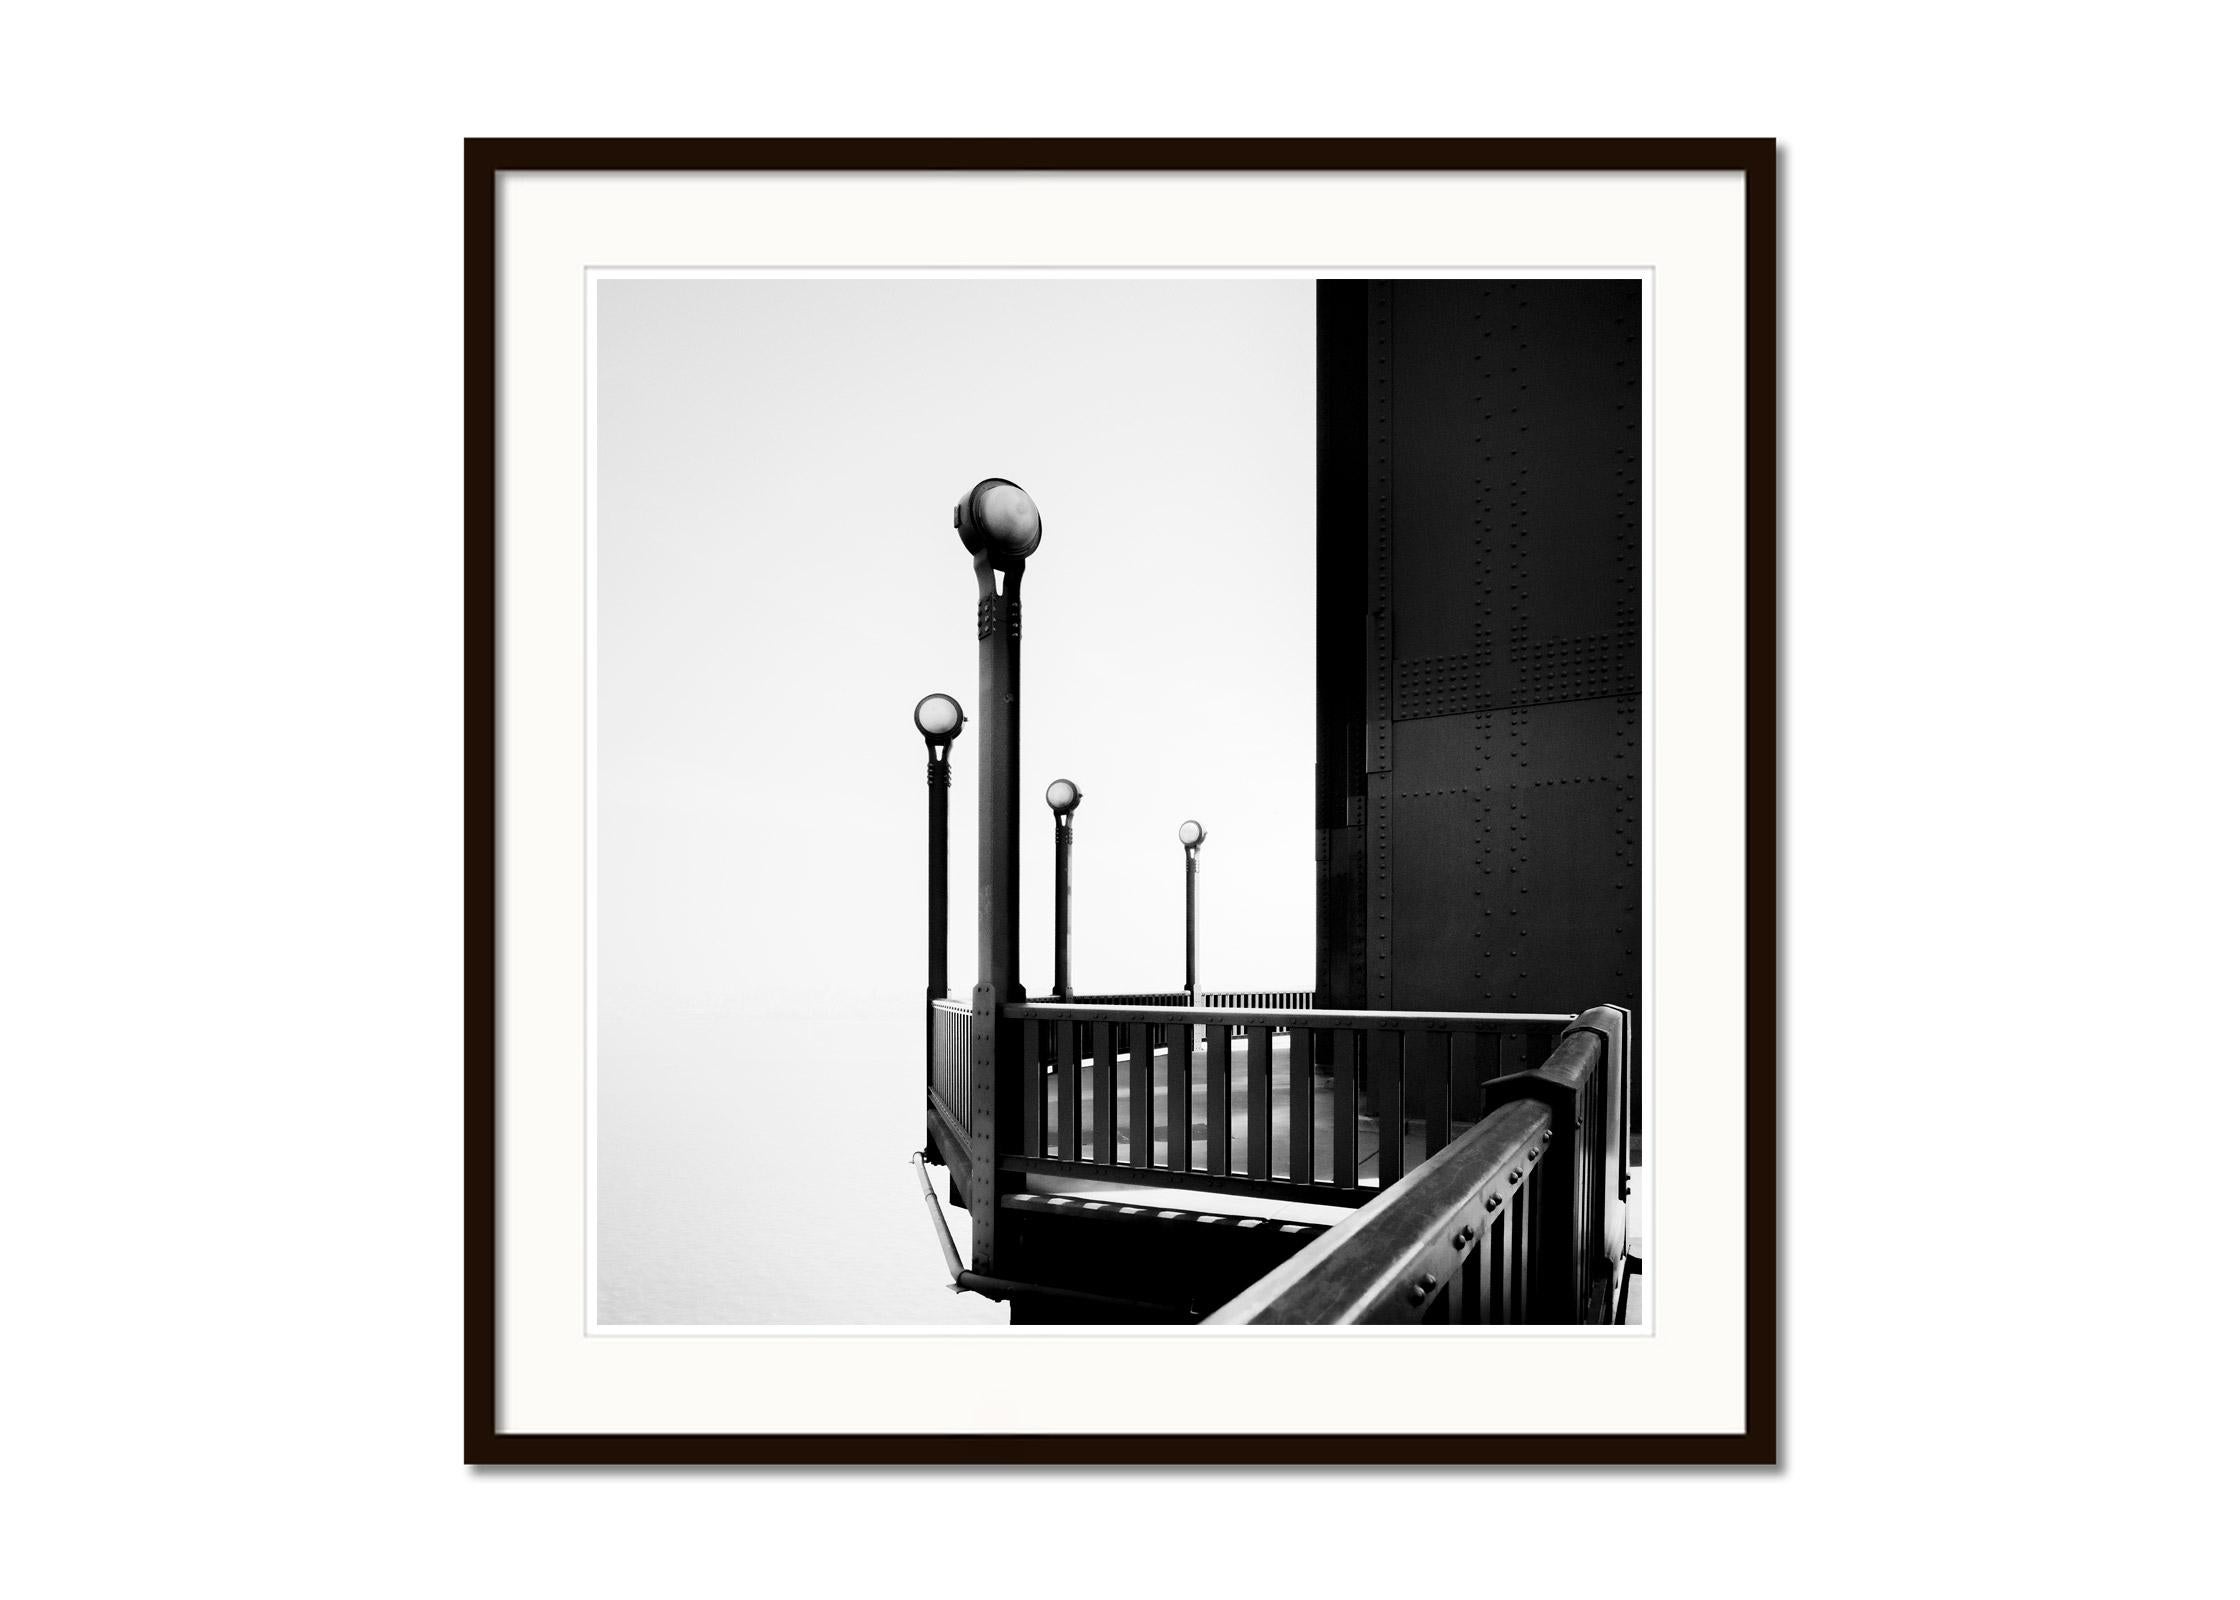 Schwarz-Weiß-Fotografie von Stadtbildern und Landschaften. Golden Gate Bridge Detail mit dem Turm und schönen Lampen, San Francisco, Kalifornien, USA. Pigmenttintendruck in einer limitierten Auflage von 9 Exemplaren. Alle Drucke von Gerald